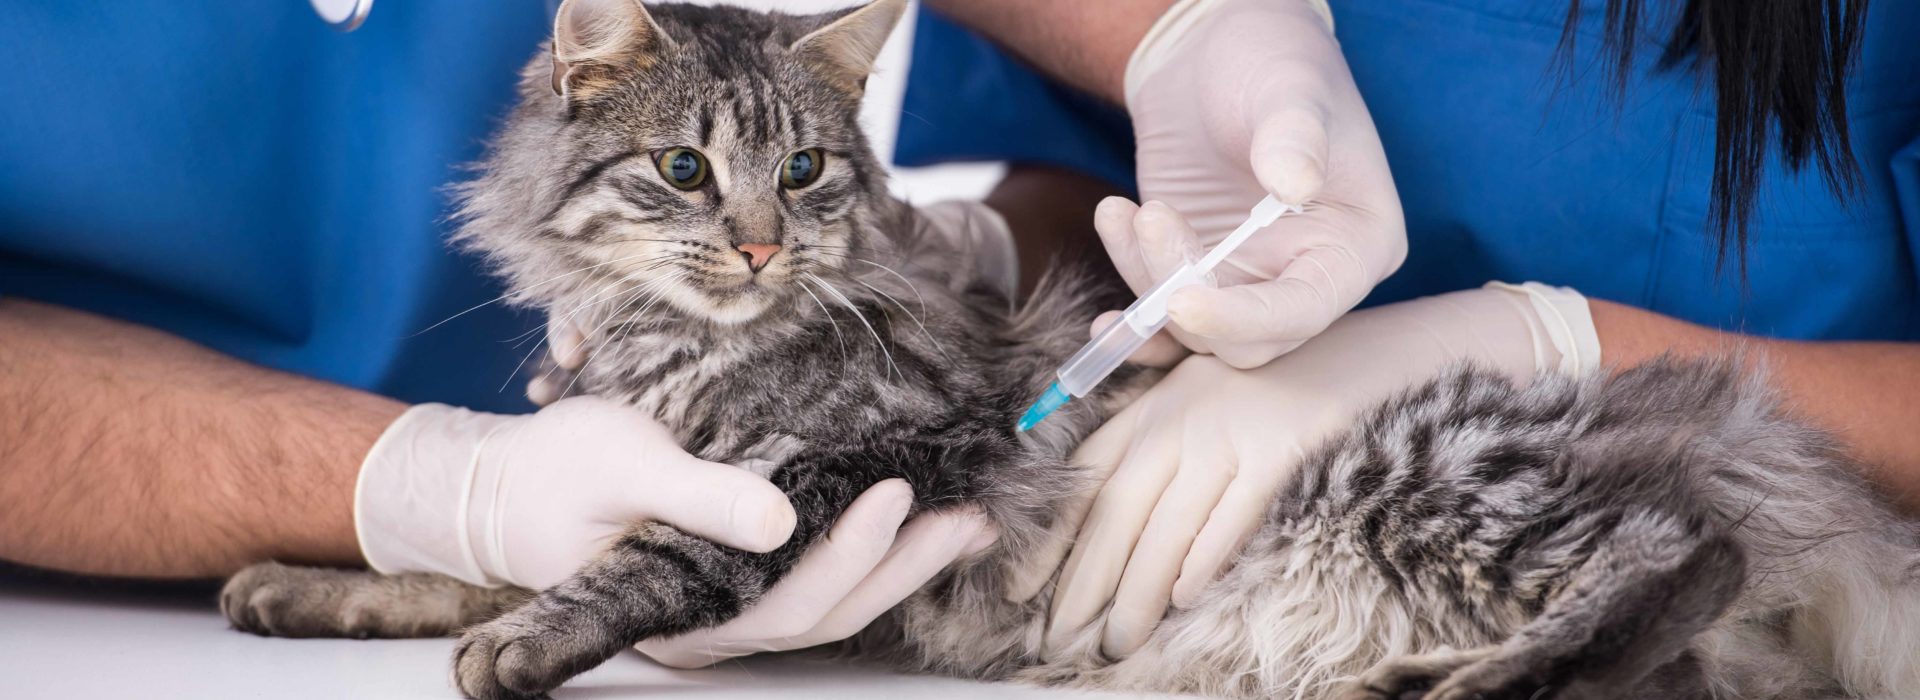 cat-vaccination